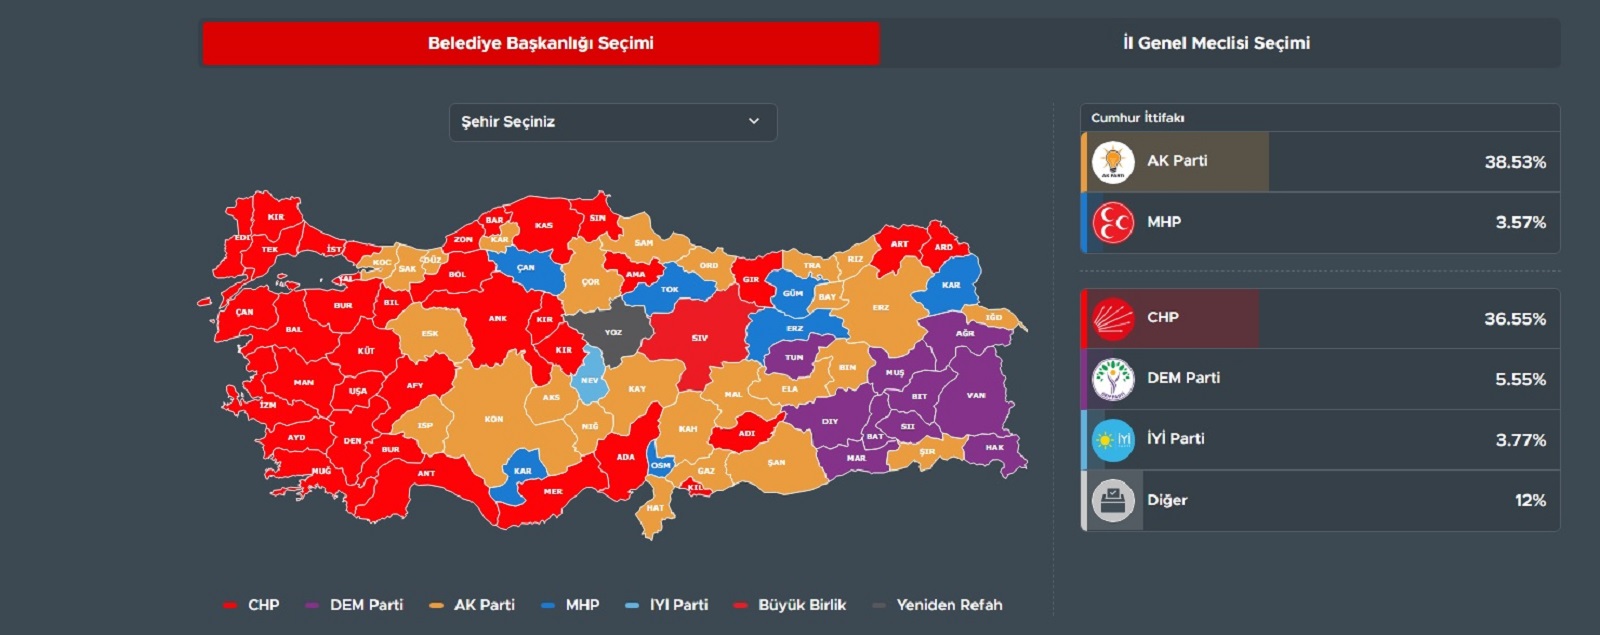 Έτσι διαμορφώνεται στις 19:43 ώρα Ελλάδος ο εκλογικός χάρτης βάσει των πρώτων αποτελεσμάτων των εκλογών στην Τουρκία